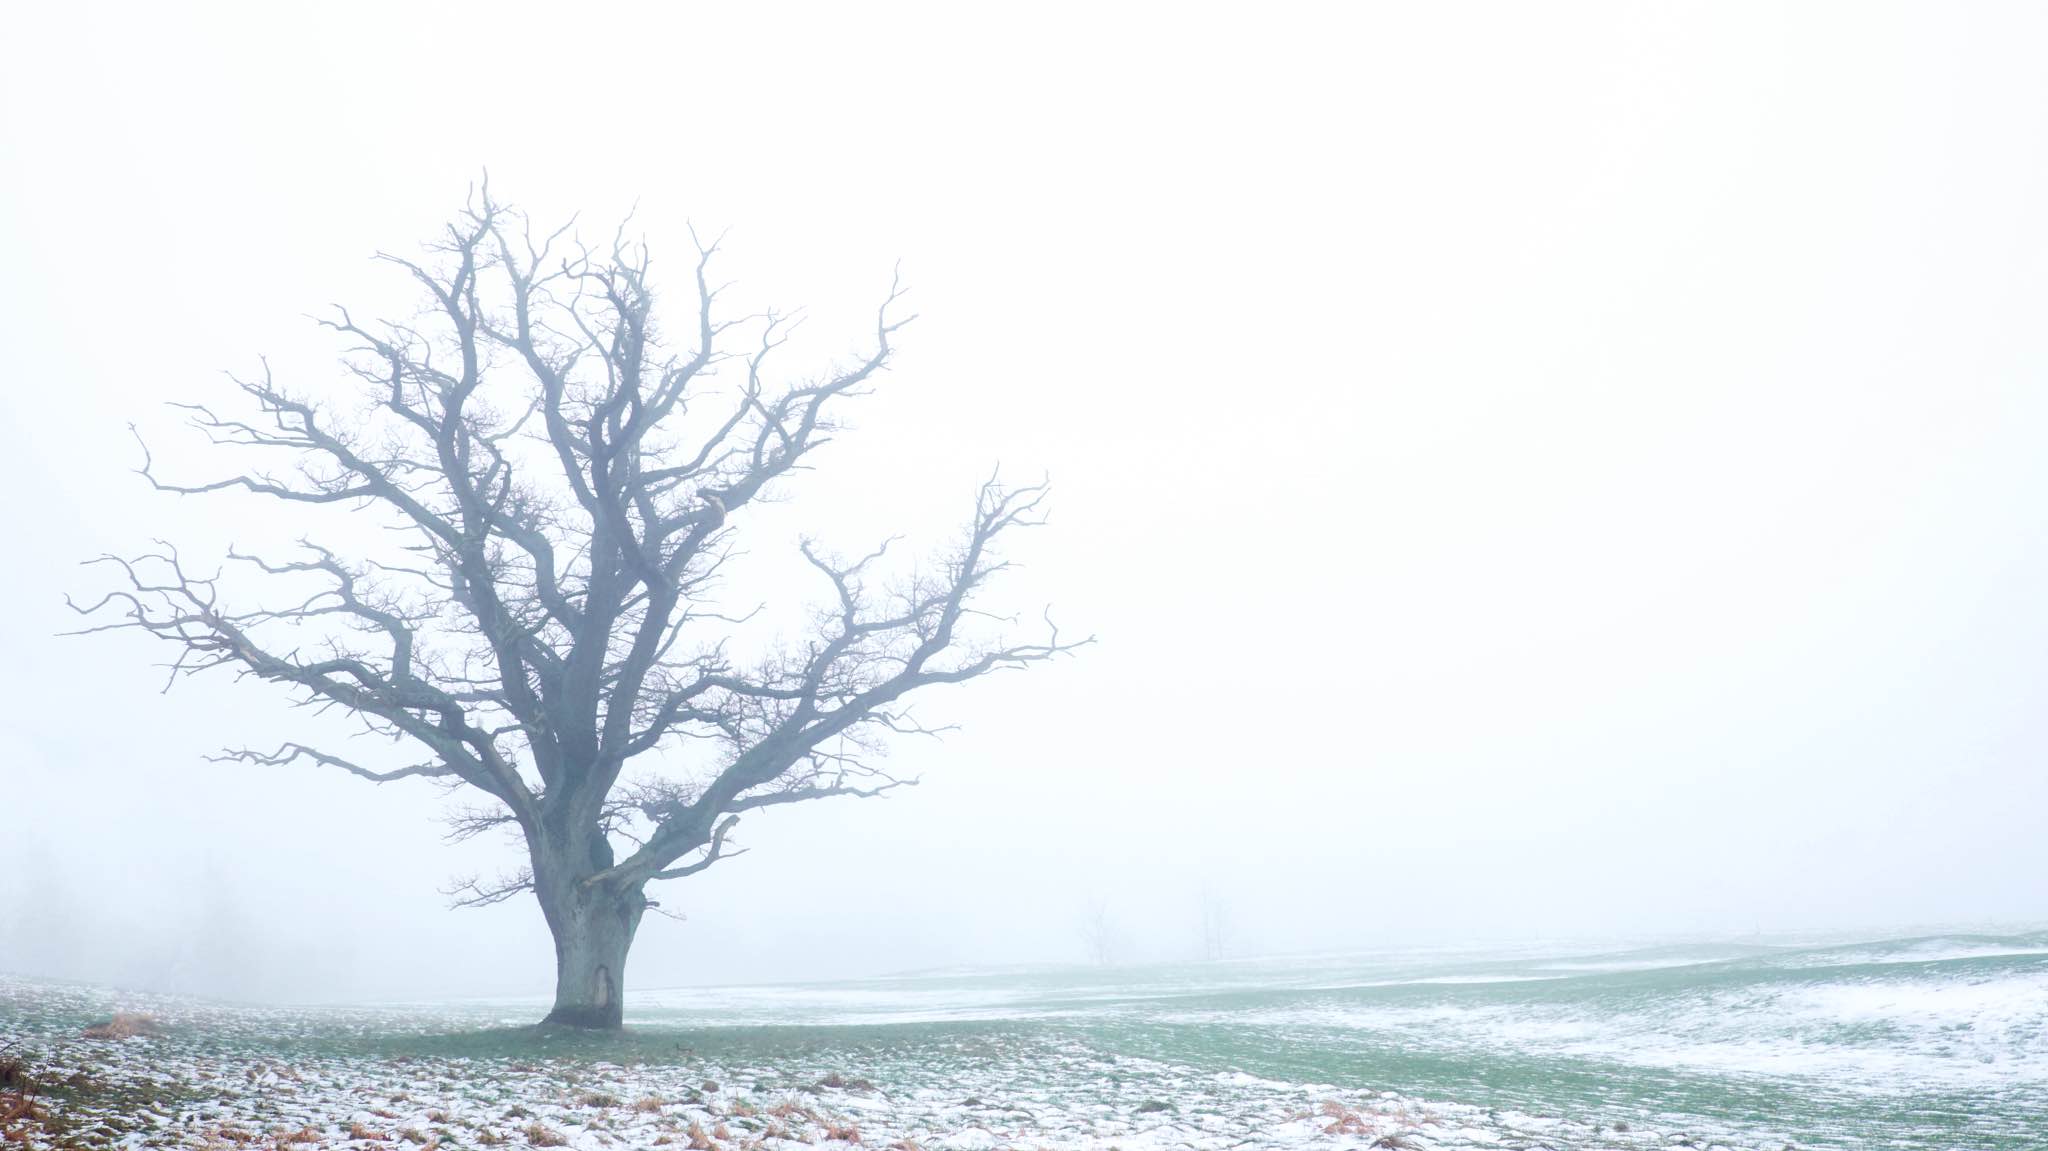 træ uden blade i tågedis